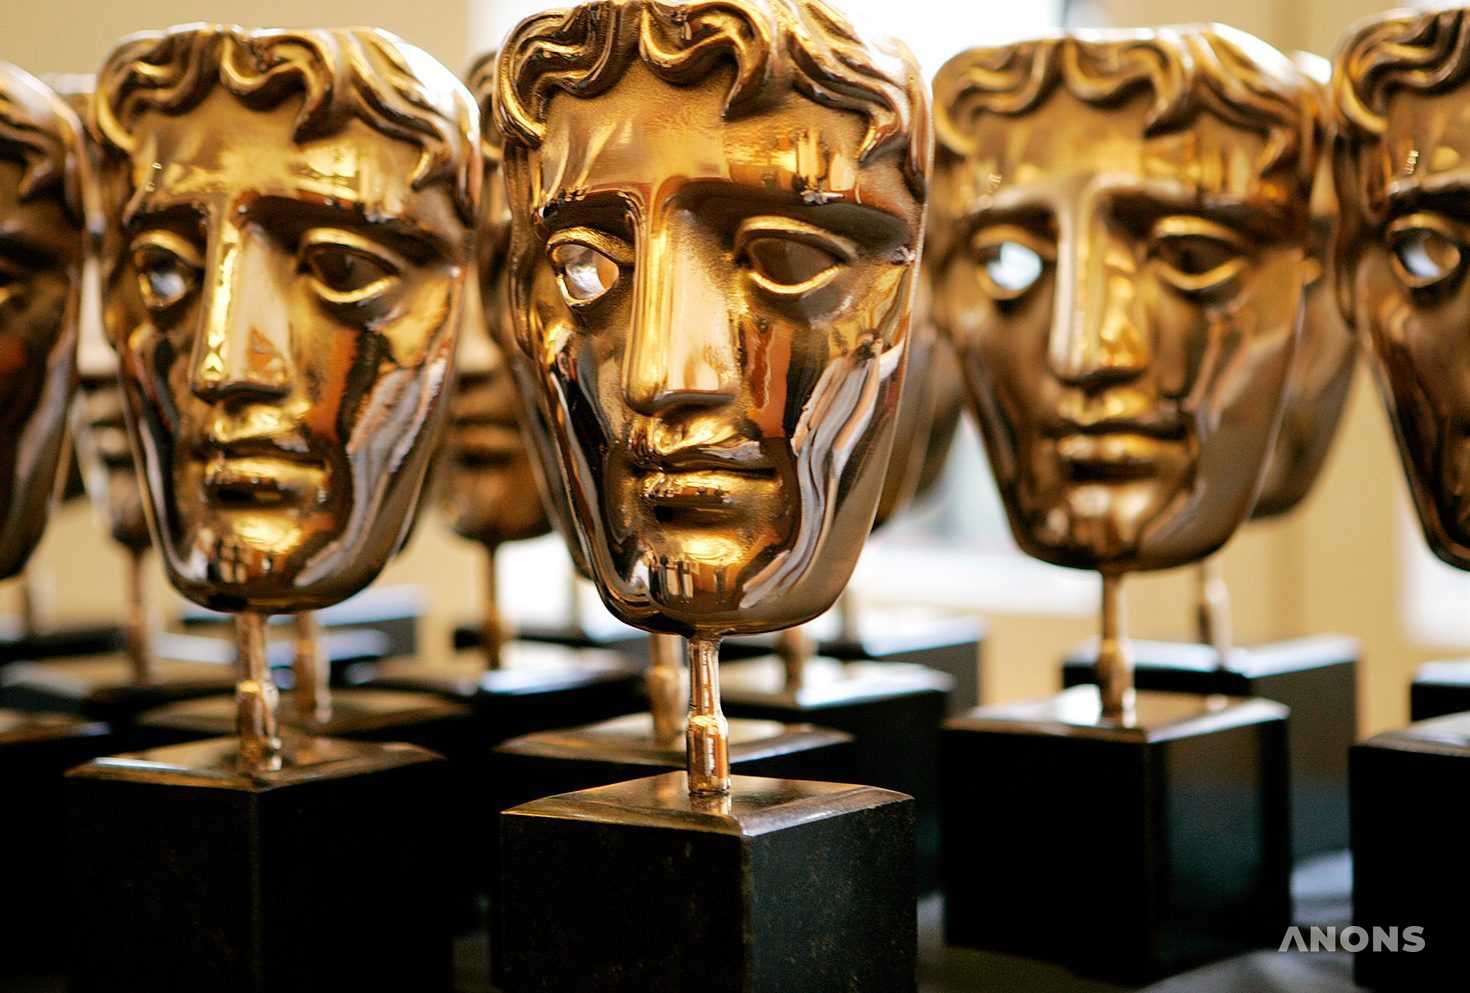 Объявлены победители премии BAFTA TV Awards 2020